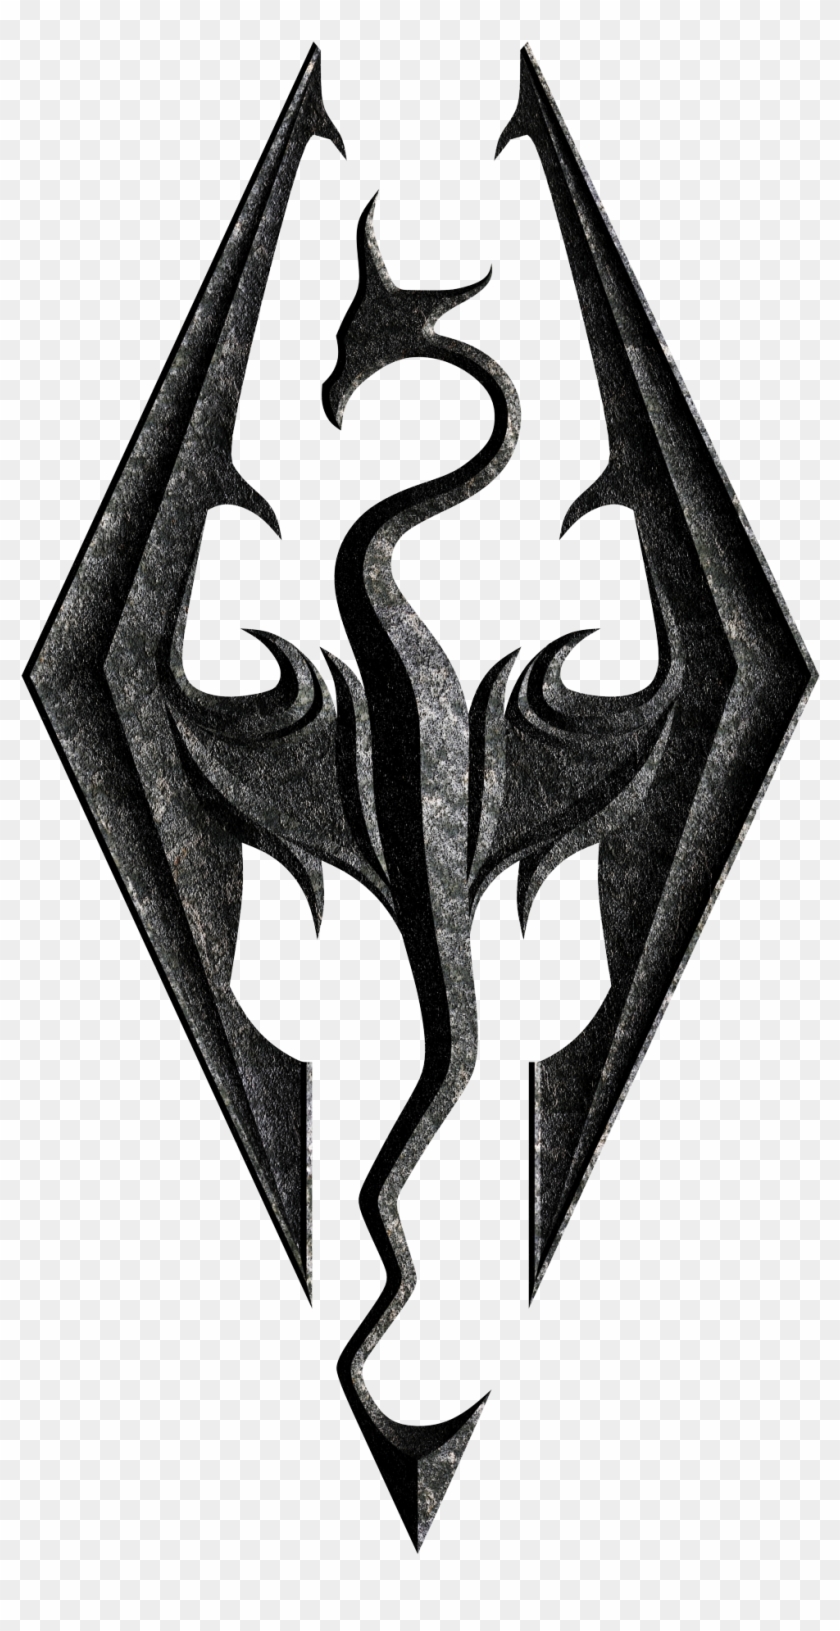 Skyrim Logo - Skyrim Black And White Logo Clipart #234107